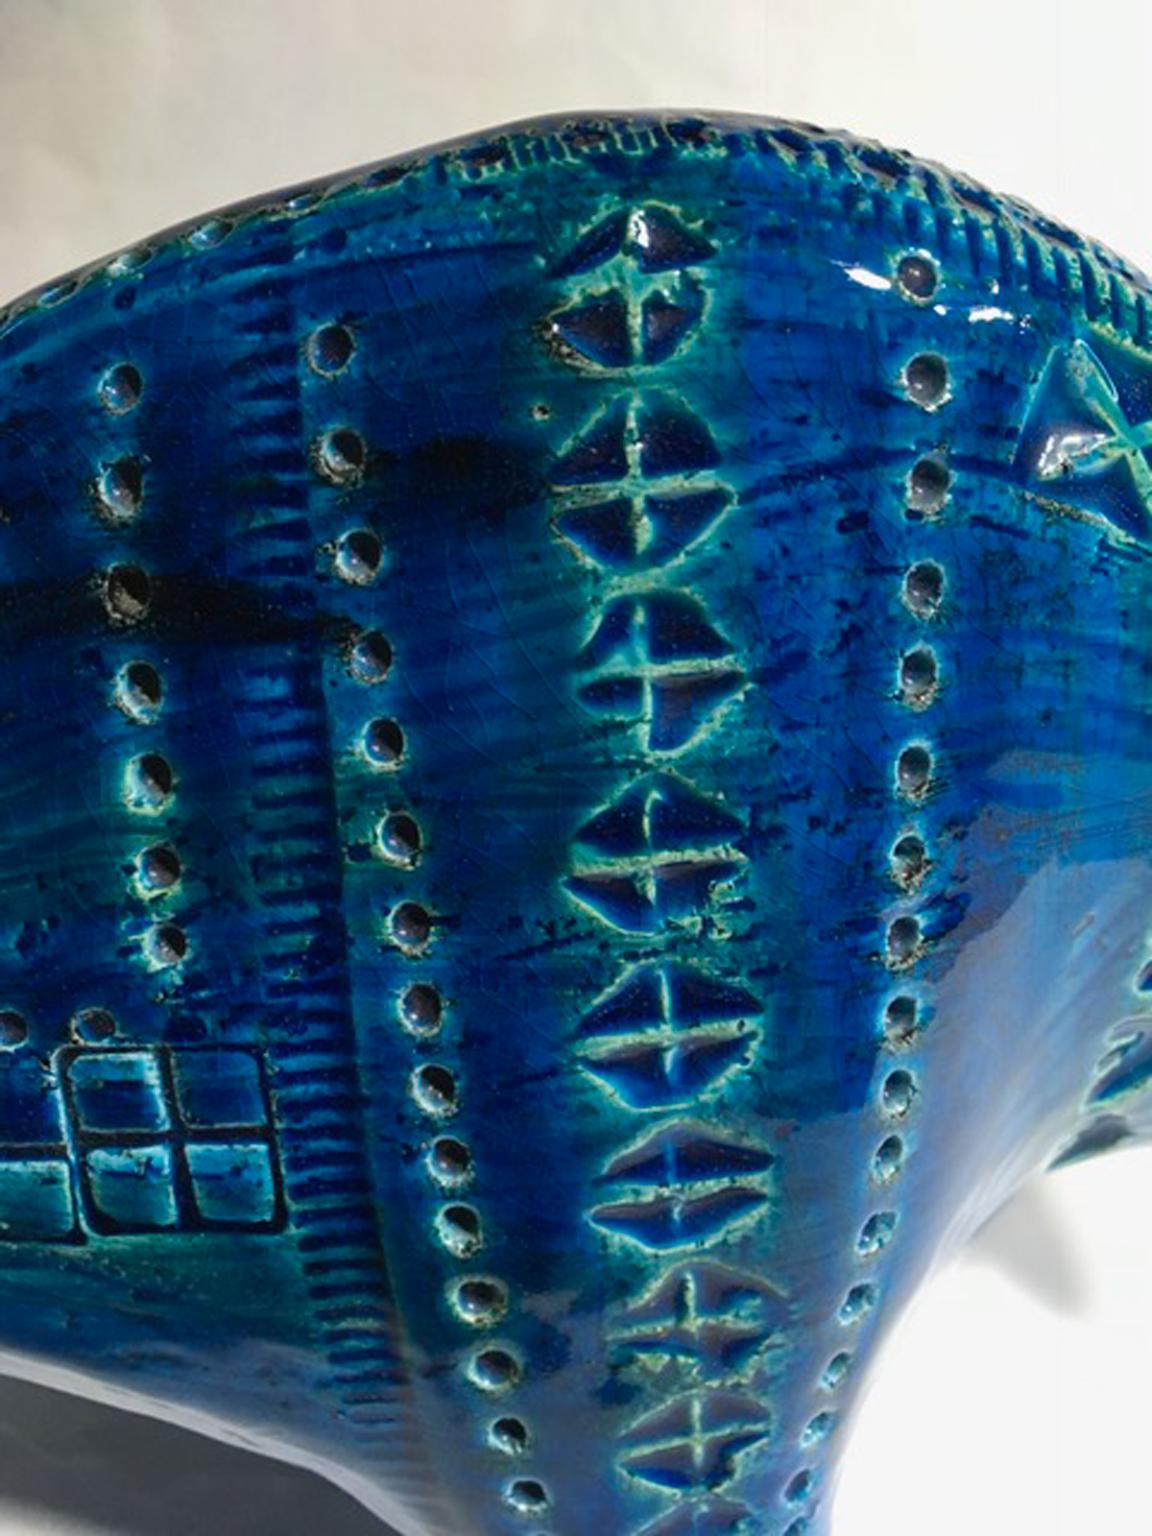 1980 Post-Modern Italian Design Bull in Turquoise Enameled Ceramic For Sale 9